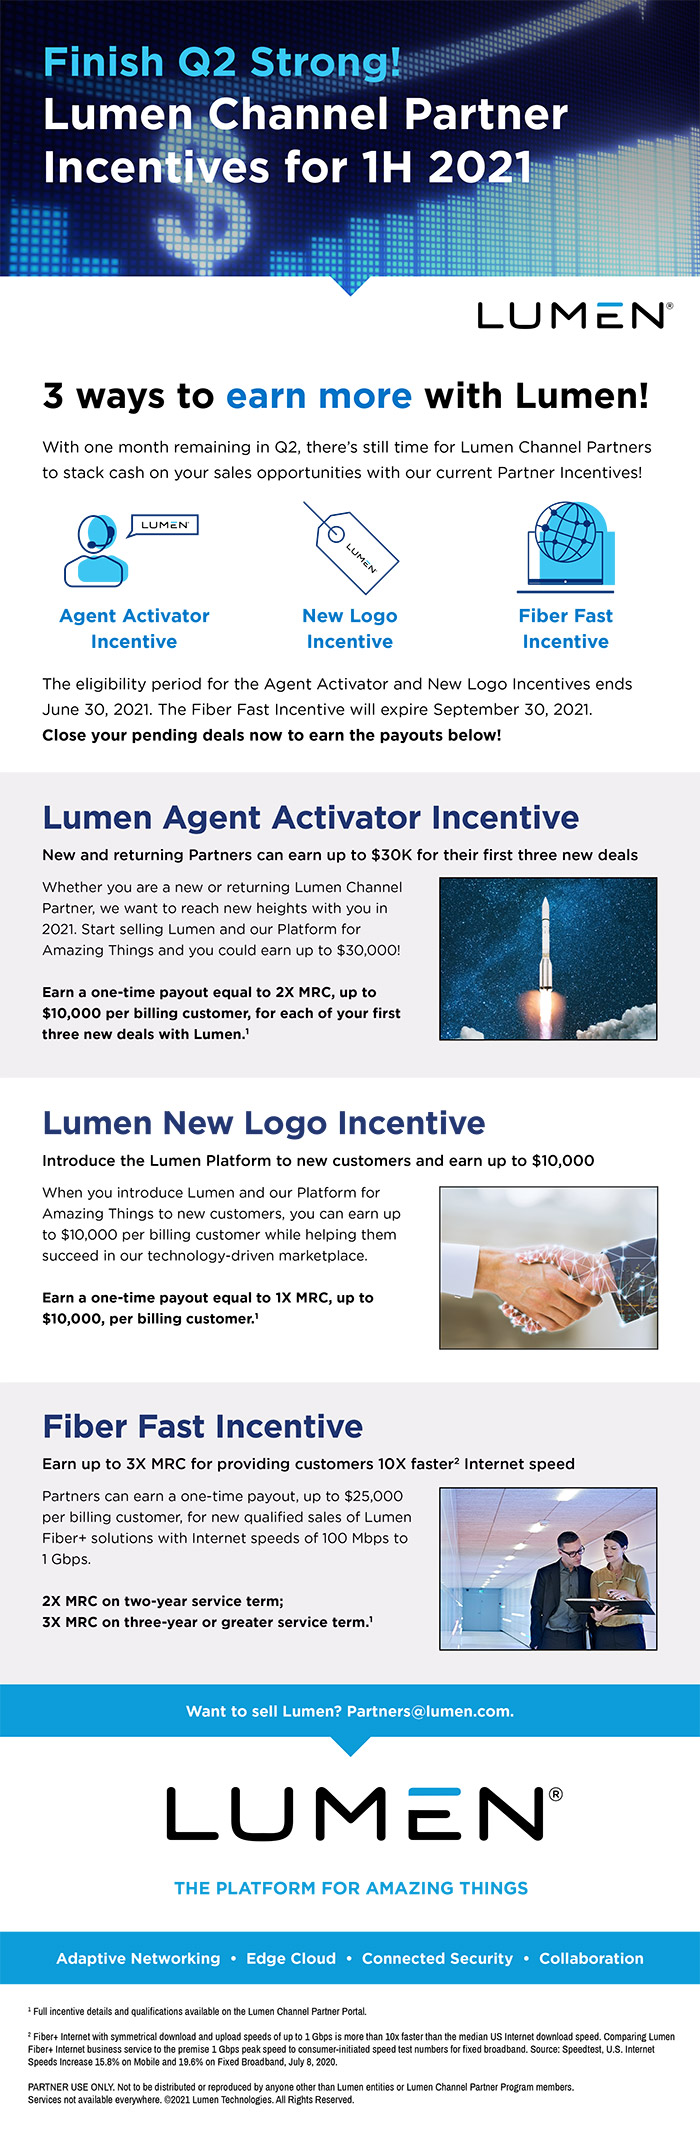 Lumen Channel Partner Incentives for 1H 2021